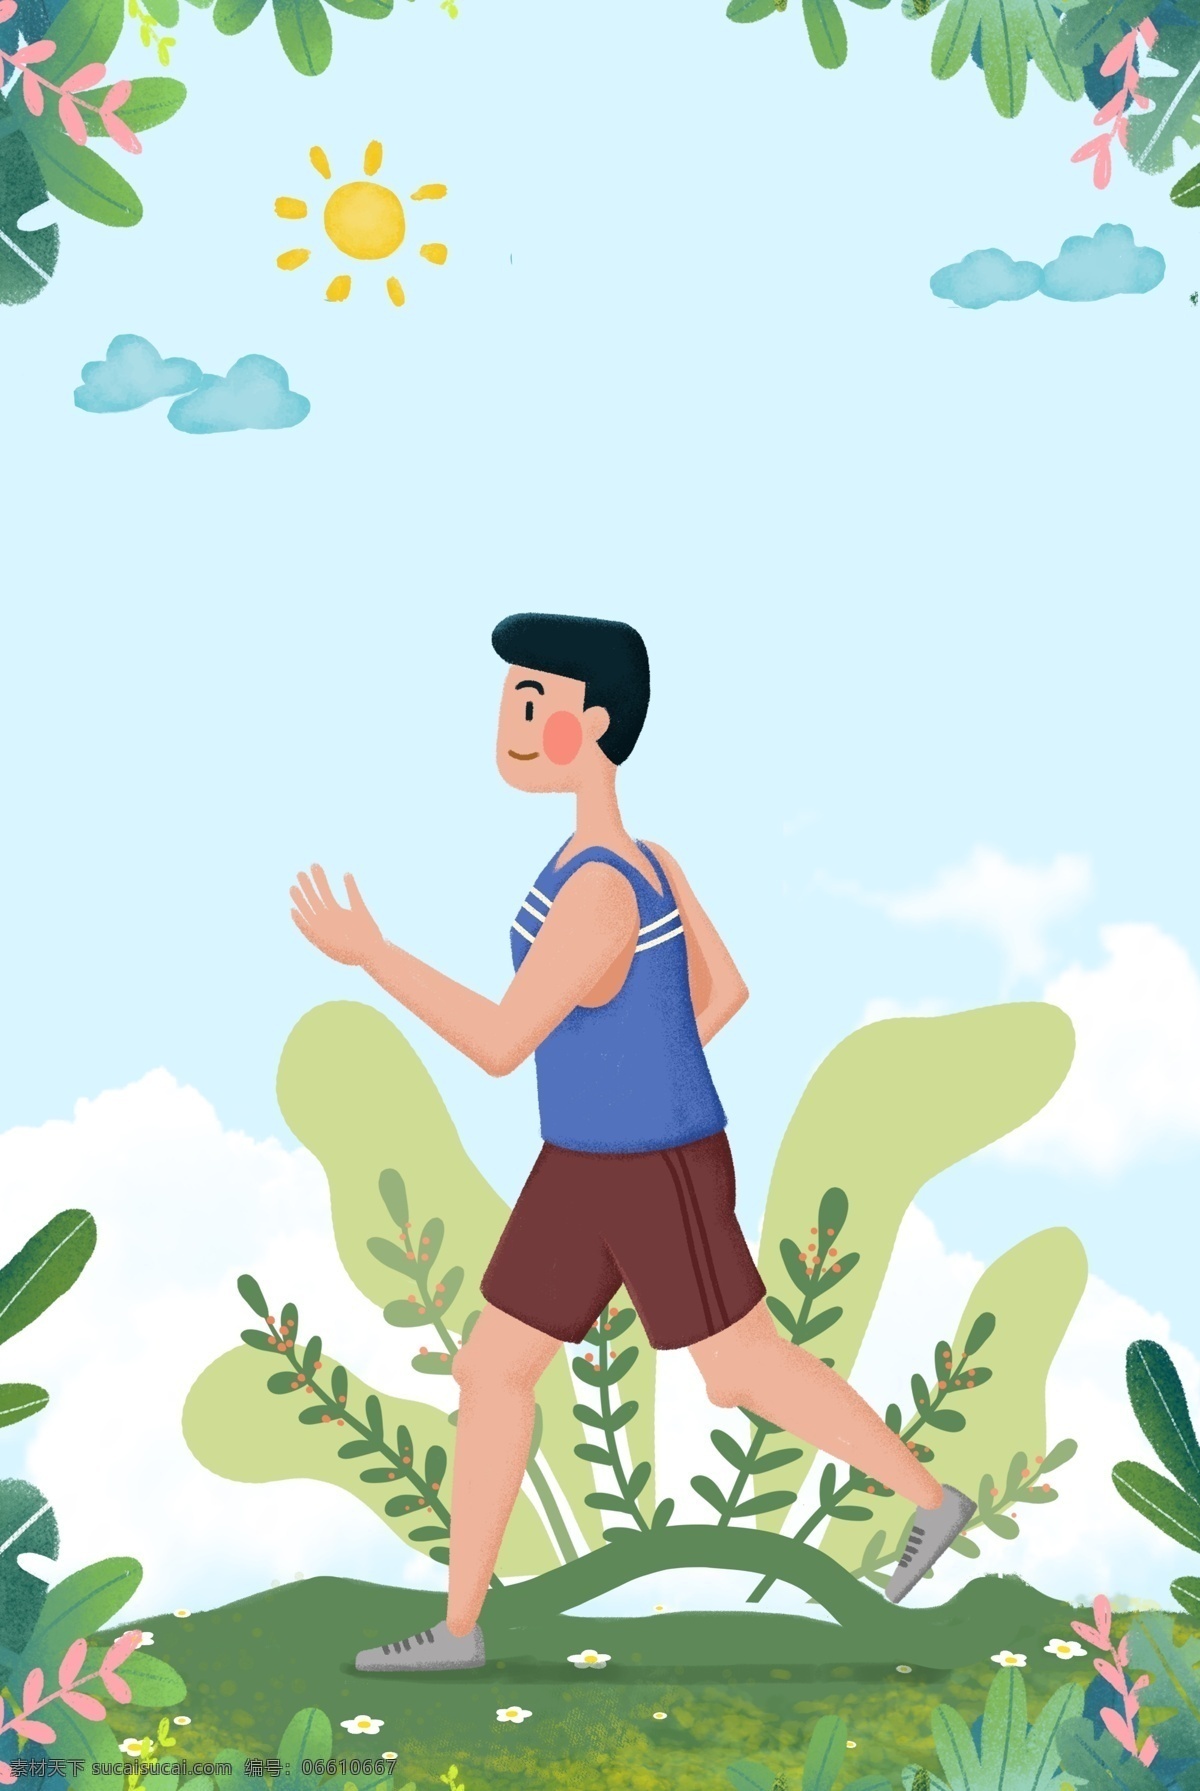 健康 跑步 运动 背景 健康运动 健身 太阳 云朵 草丛 树叶 简约 手绘